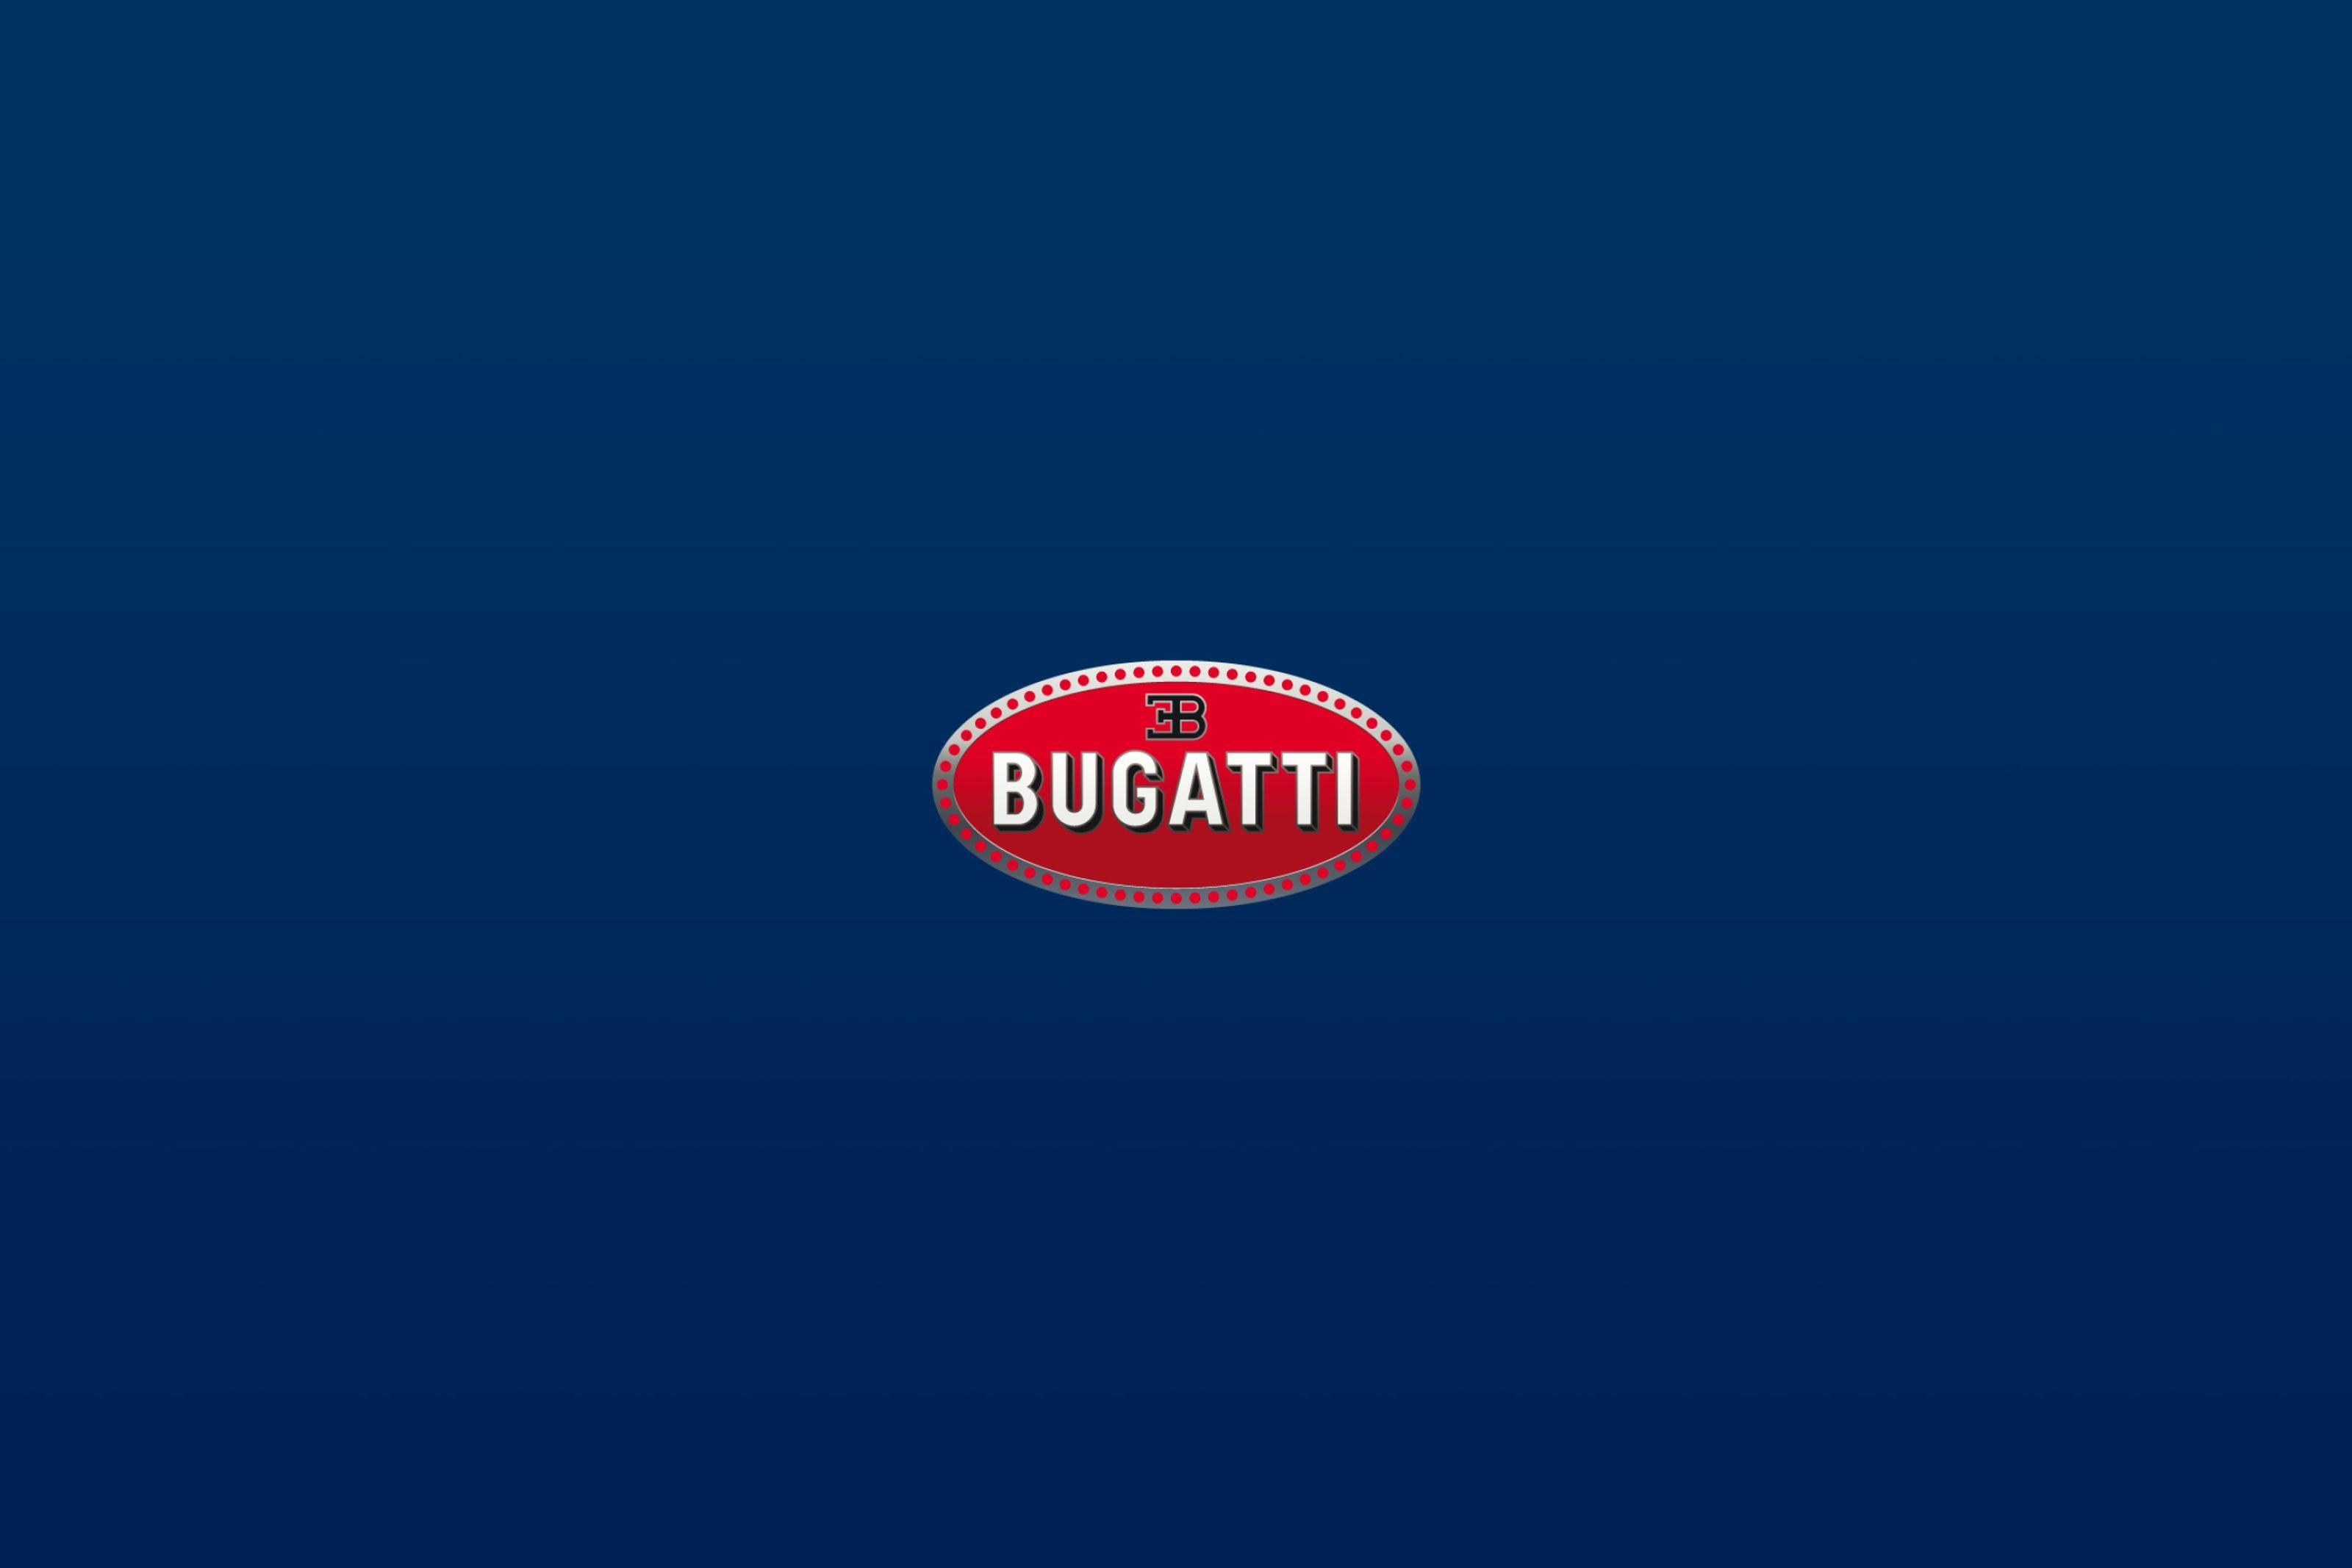 Bugatti lance ses médias sociaux officiels et une appli mobile